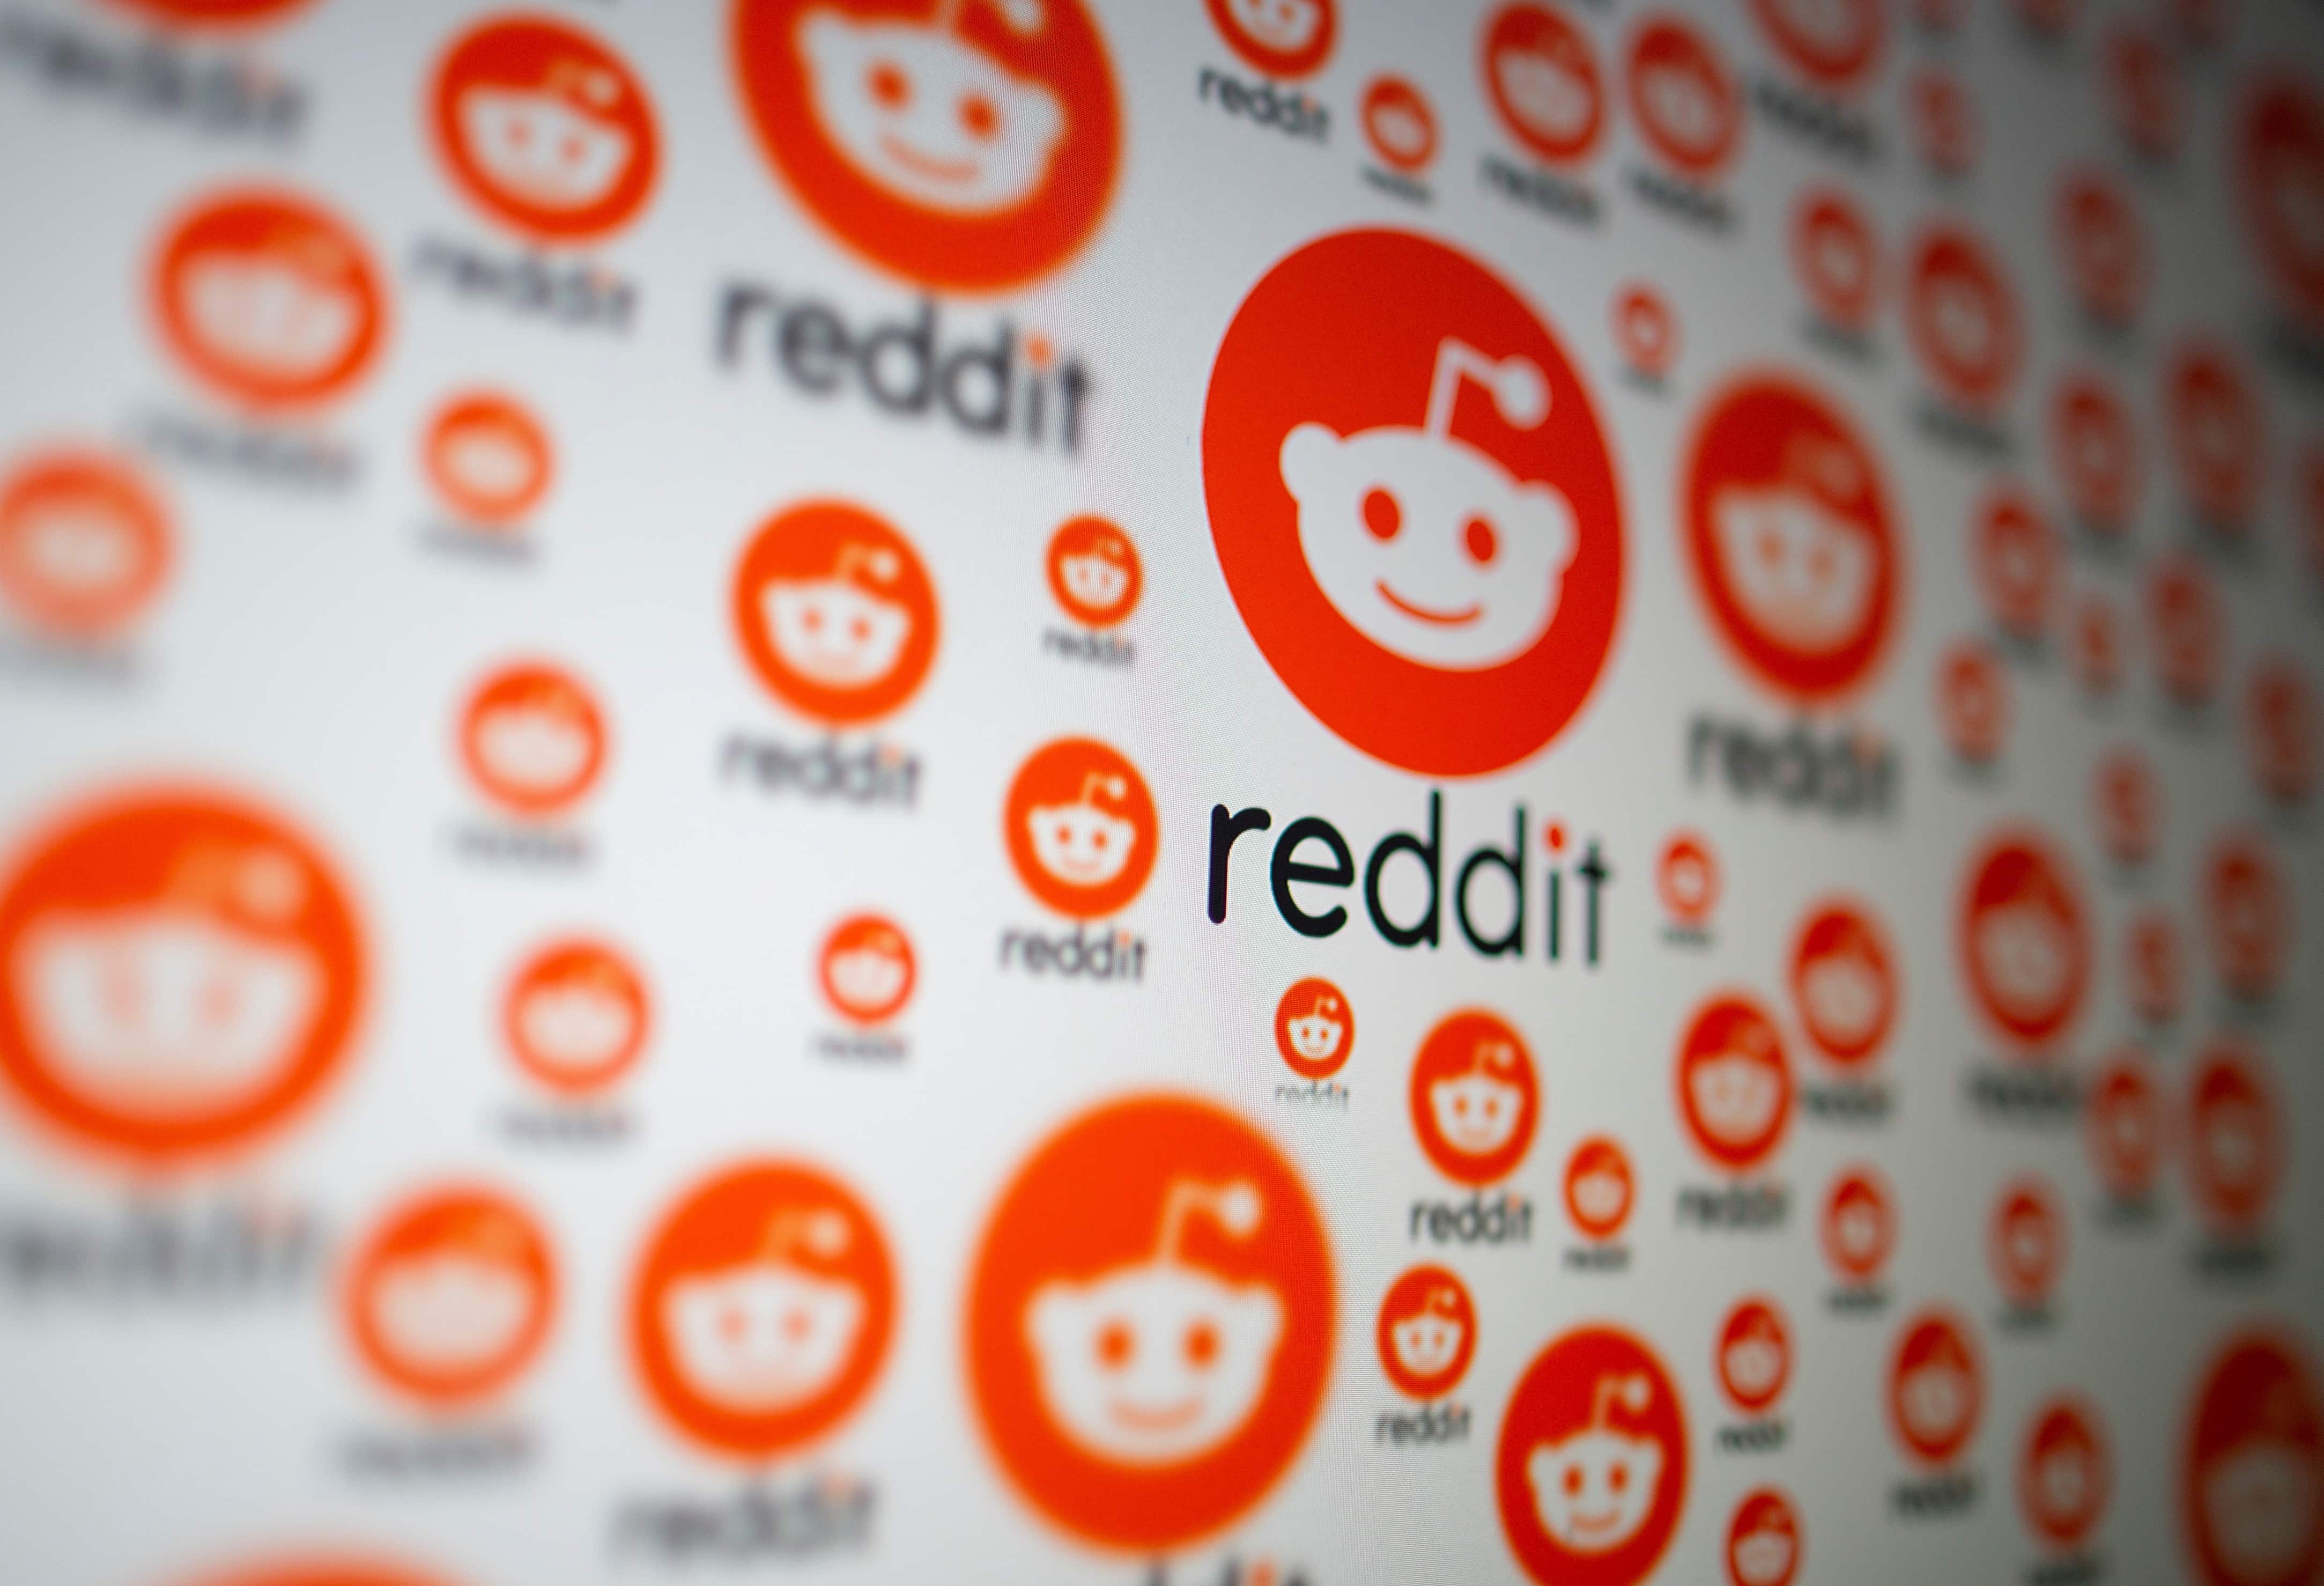 Reddit back after major outage Zee Business